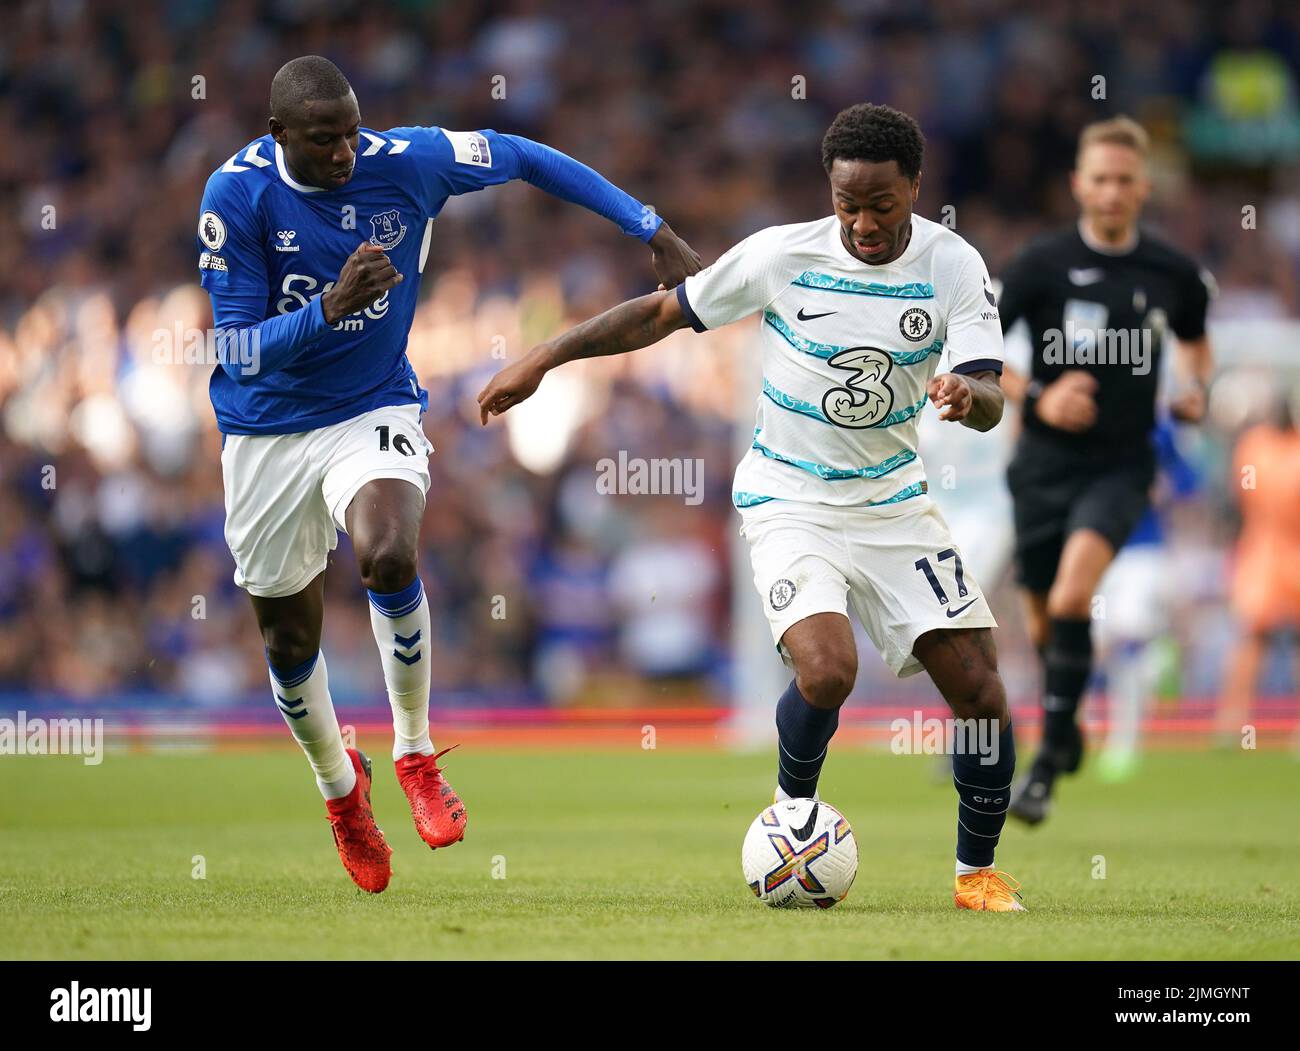 Evertons Abdoulaye Doucour (links) und Chelsea's Raheem Sterling kämpfen während des Premier League-Spiels im Goodison Park, Liverpool, um den Ball. Bilddatum: Samstag, 6. August 2022. Stockfoto